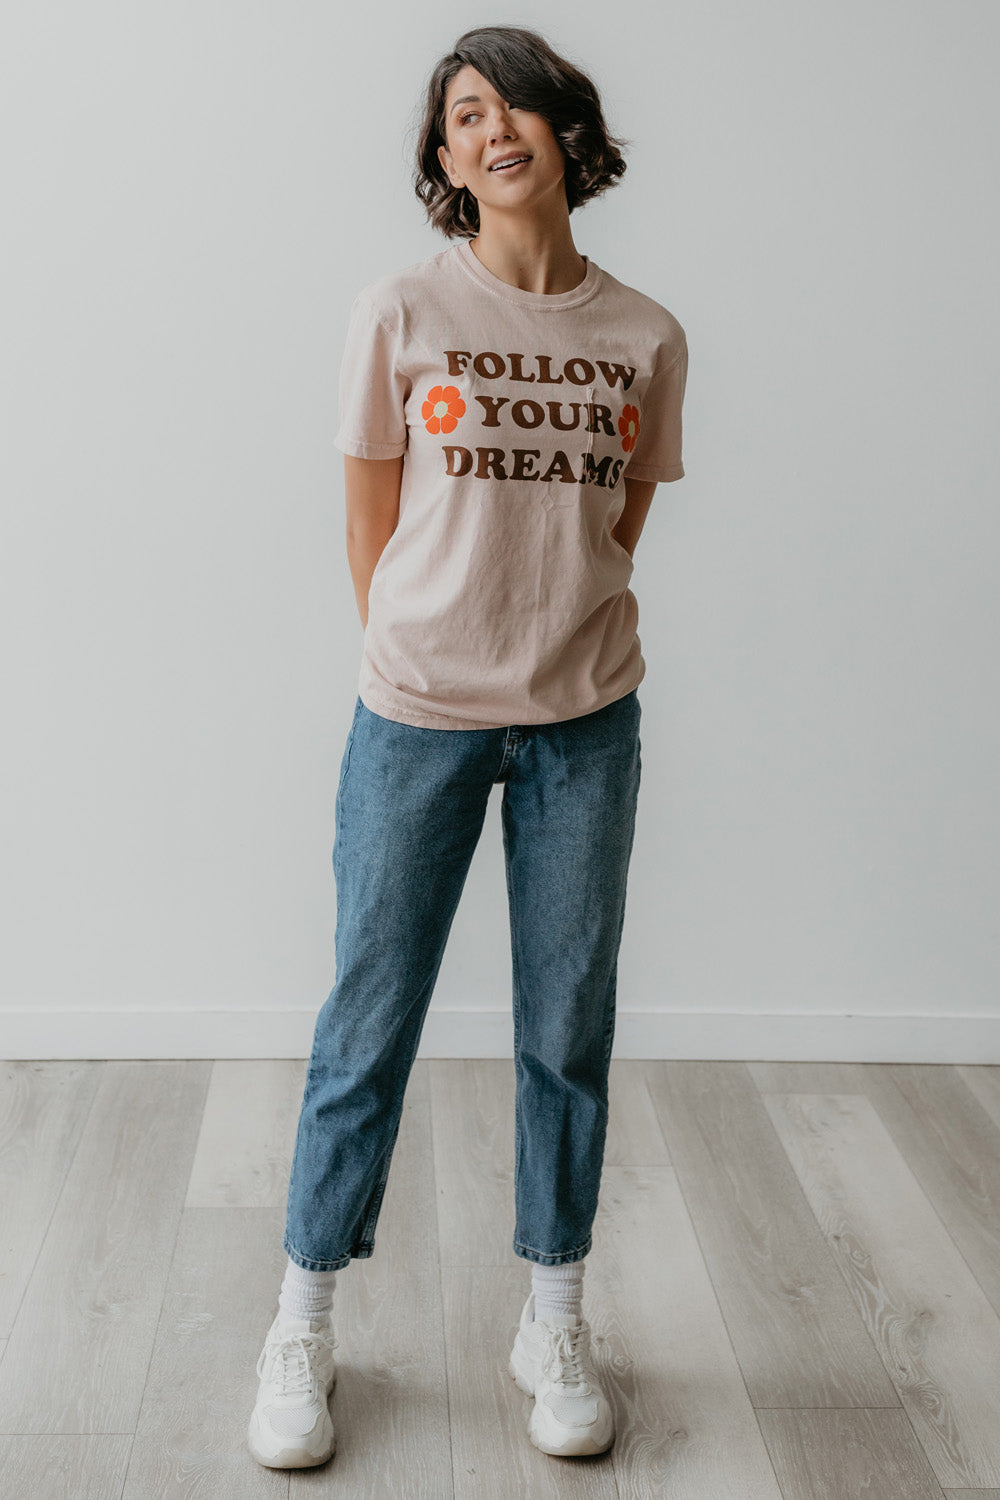 Follow your Dreams Tee